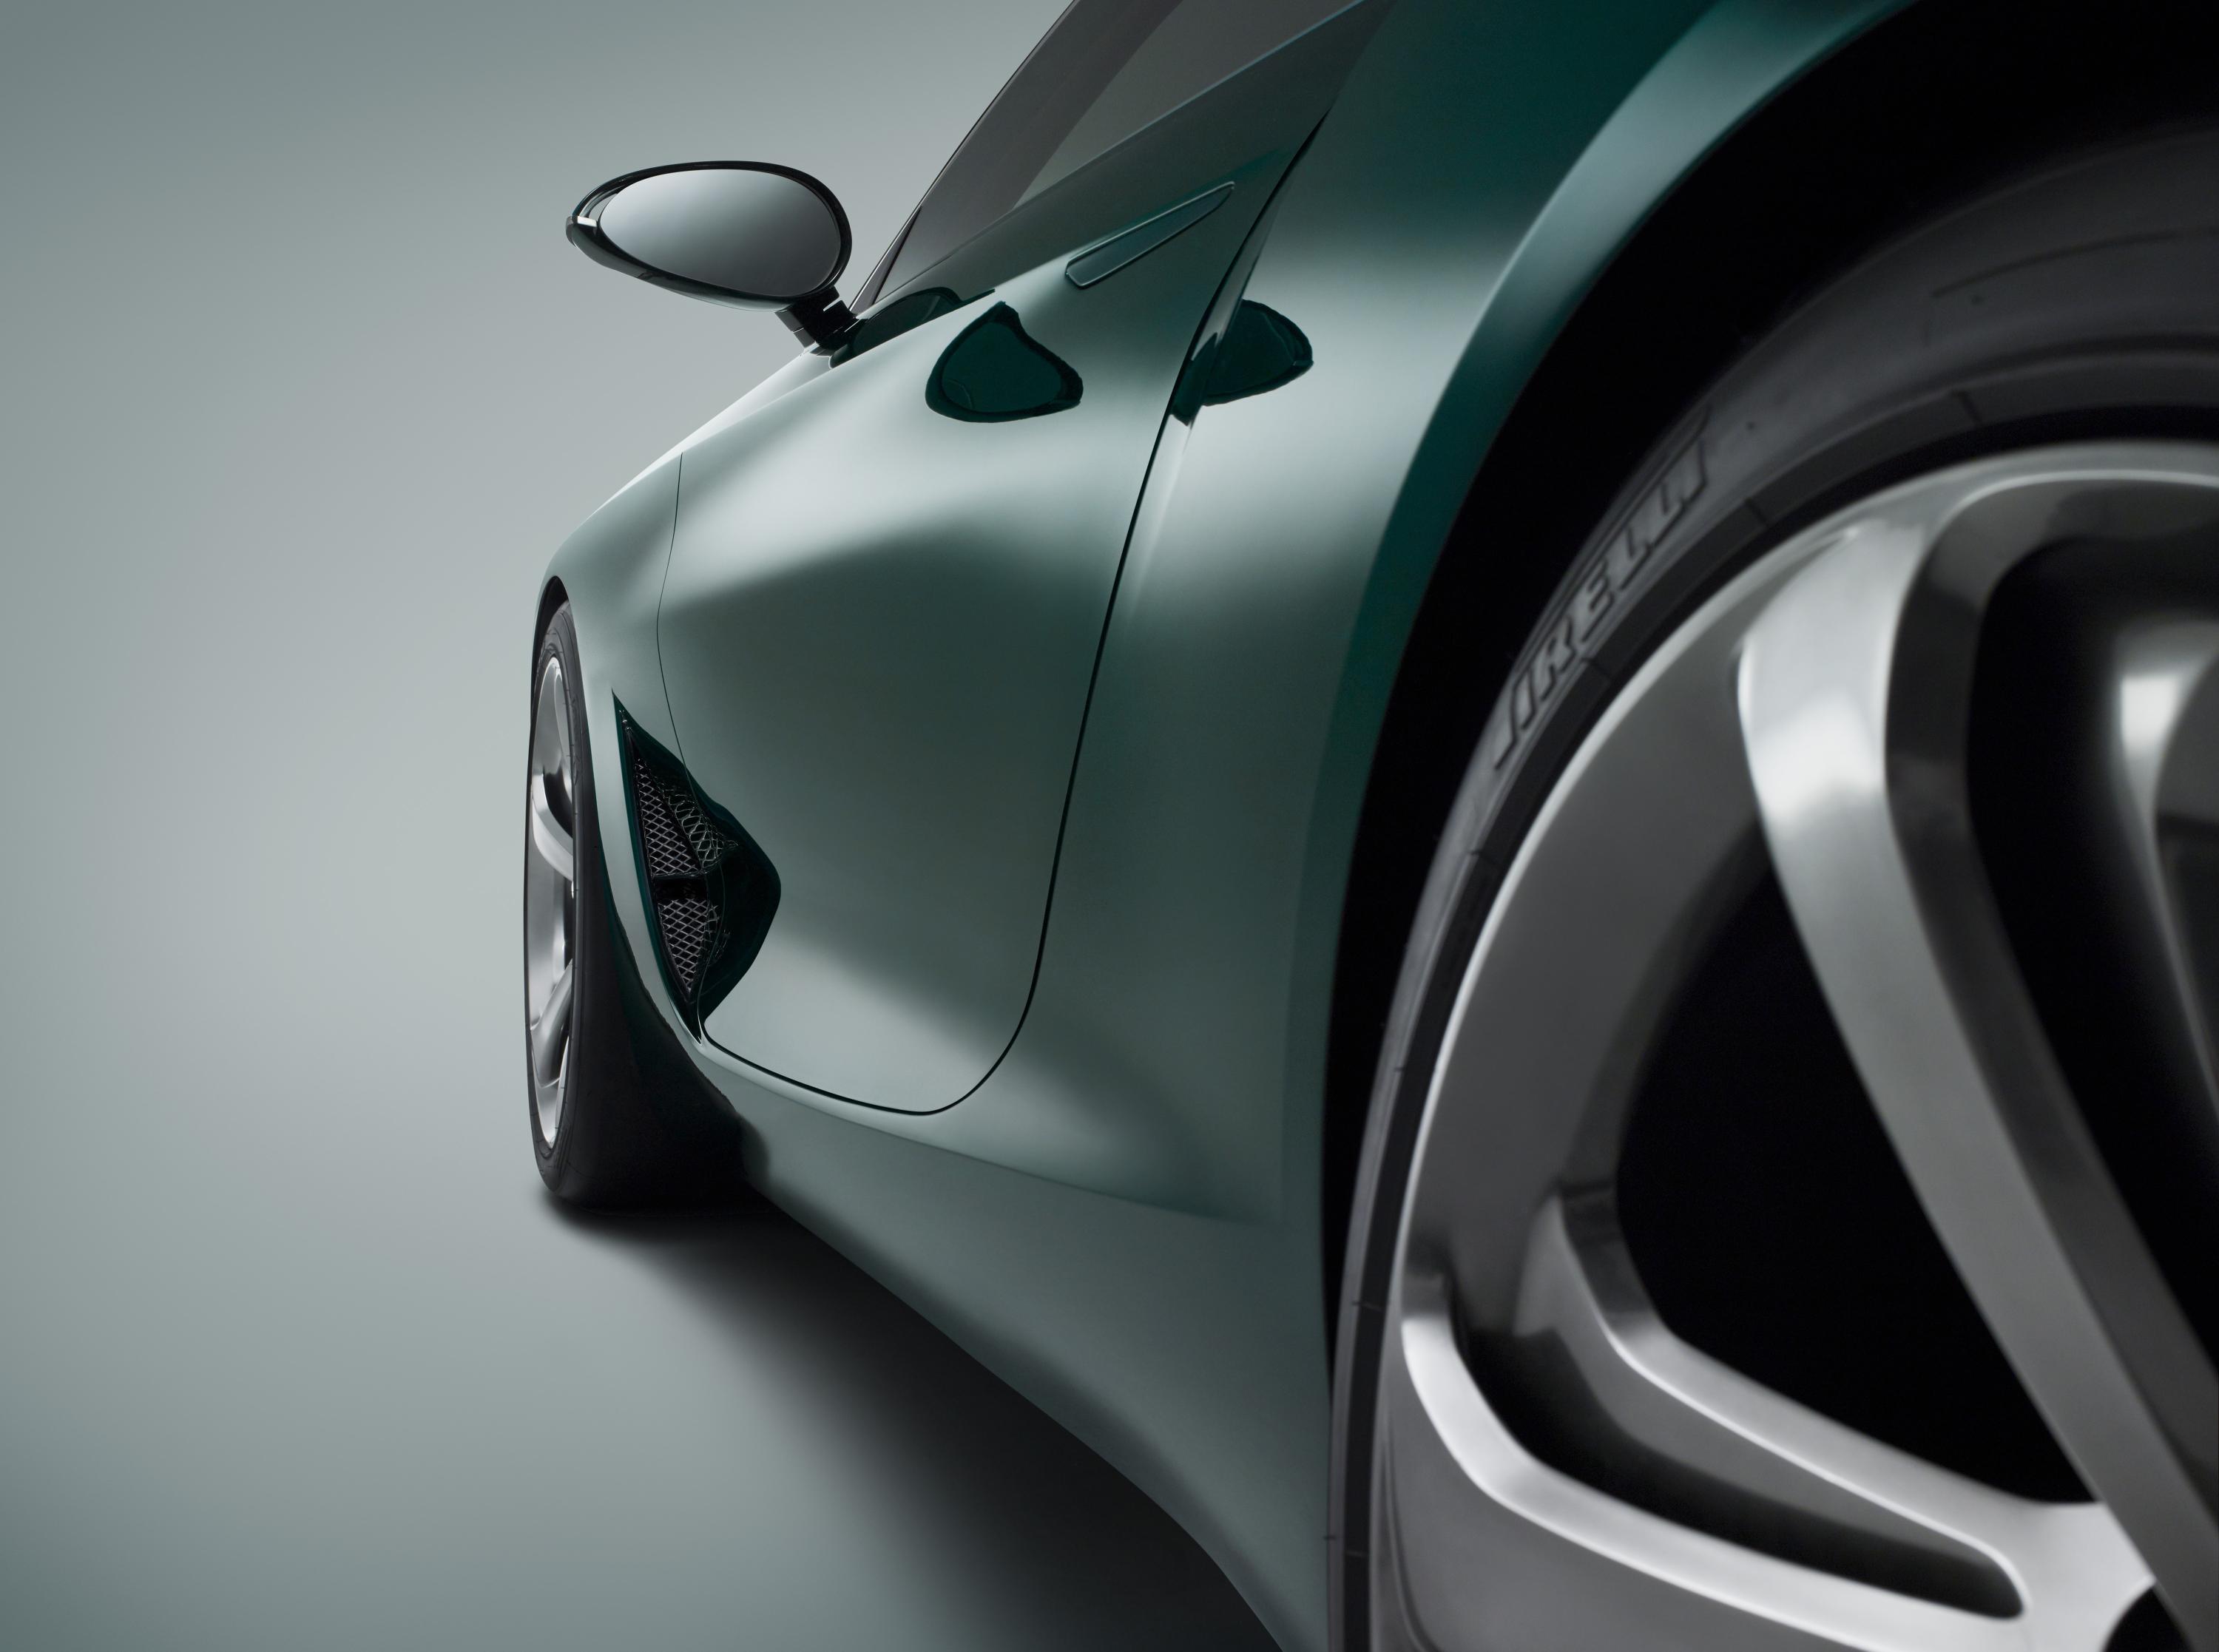 Bentley Exp10 Speed 6 Concept Exclusive Video Access Inside Bentley S Future Evo